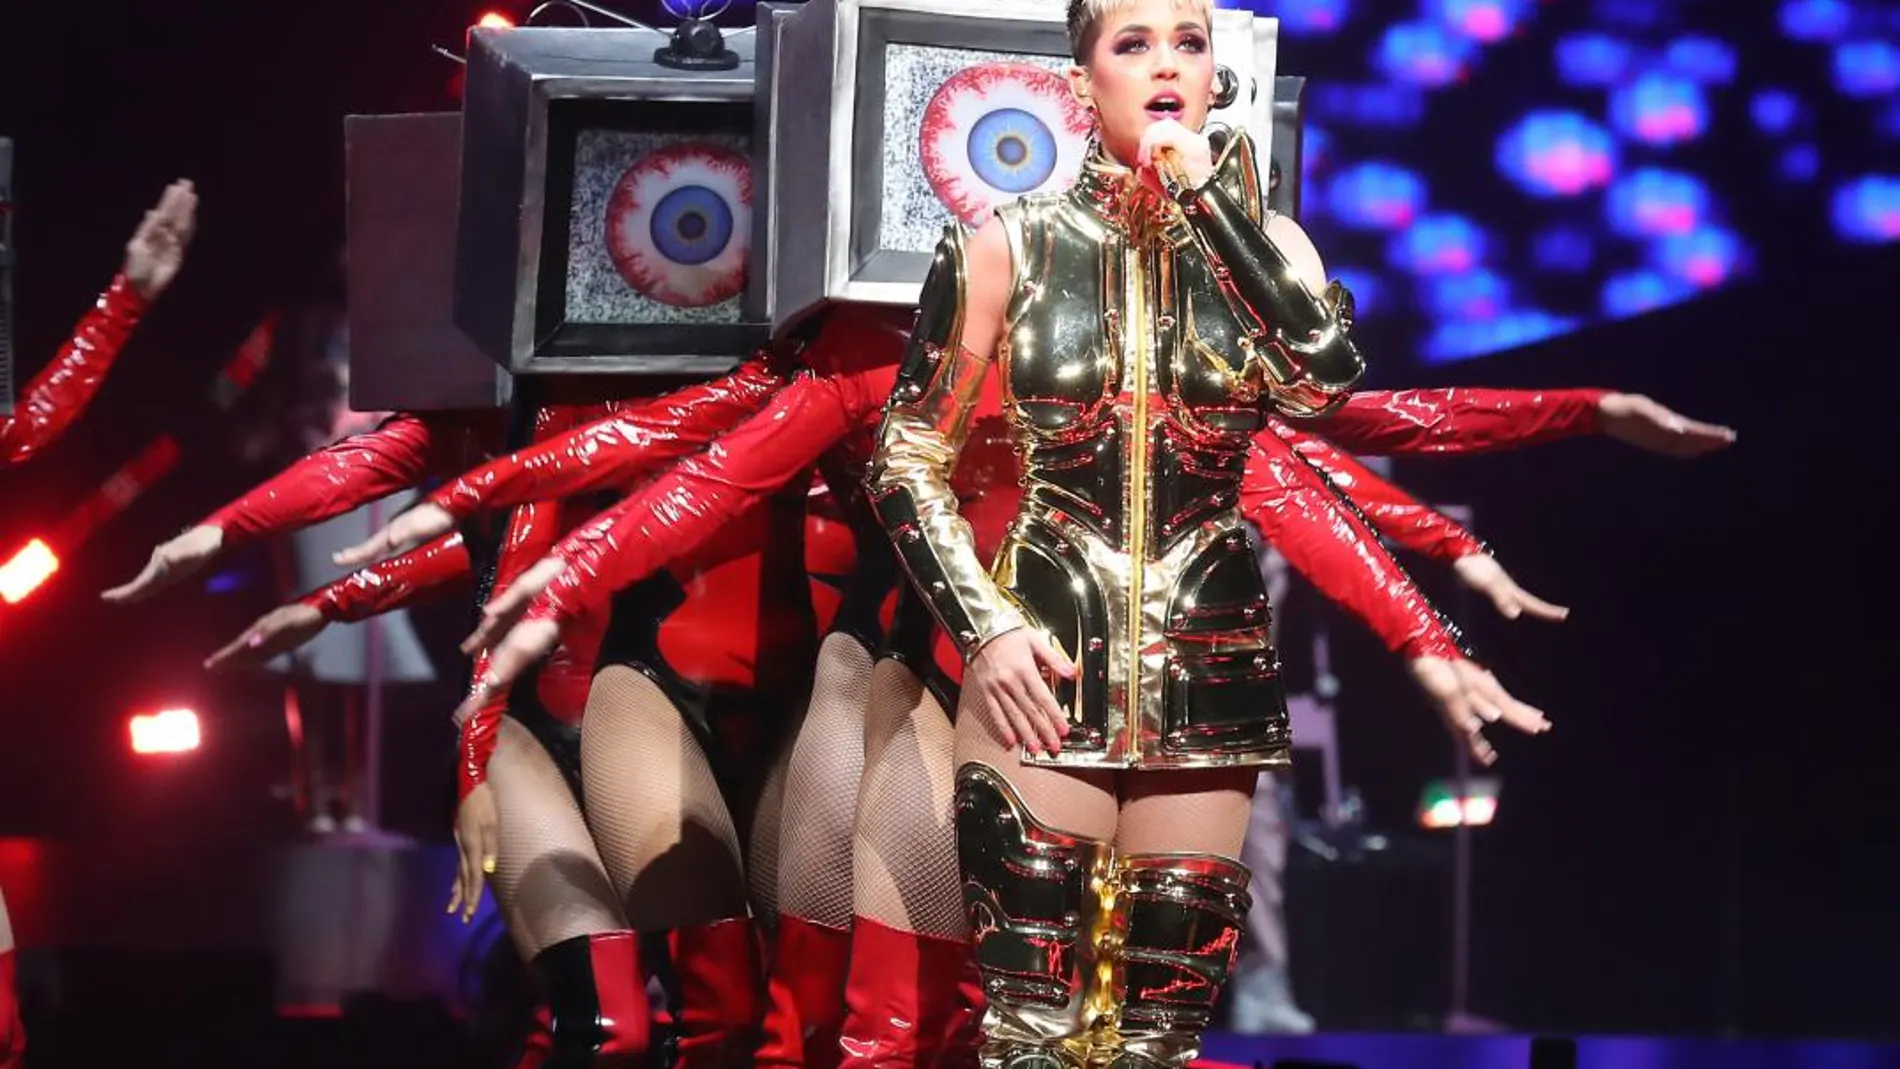 La cantante Katy Perry en un concierto Las Vegas